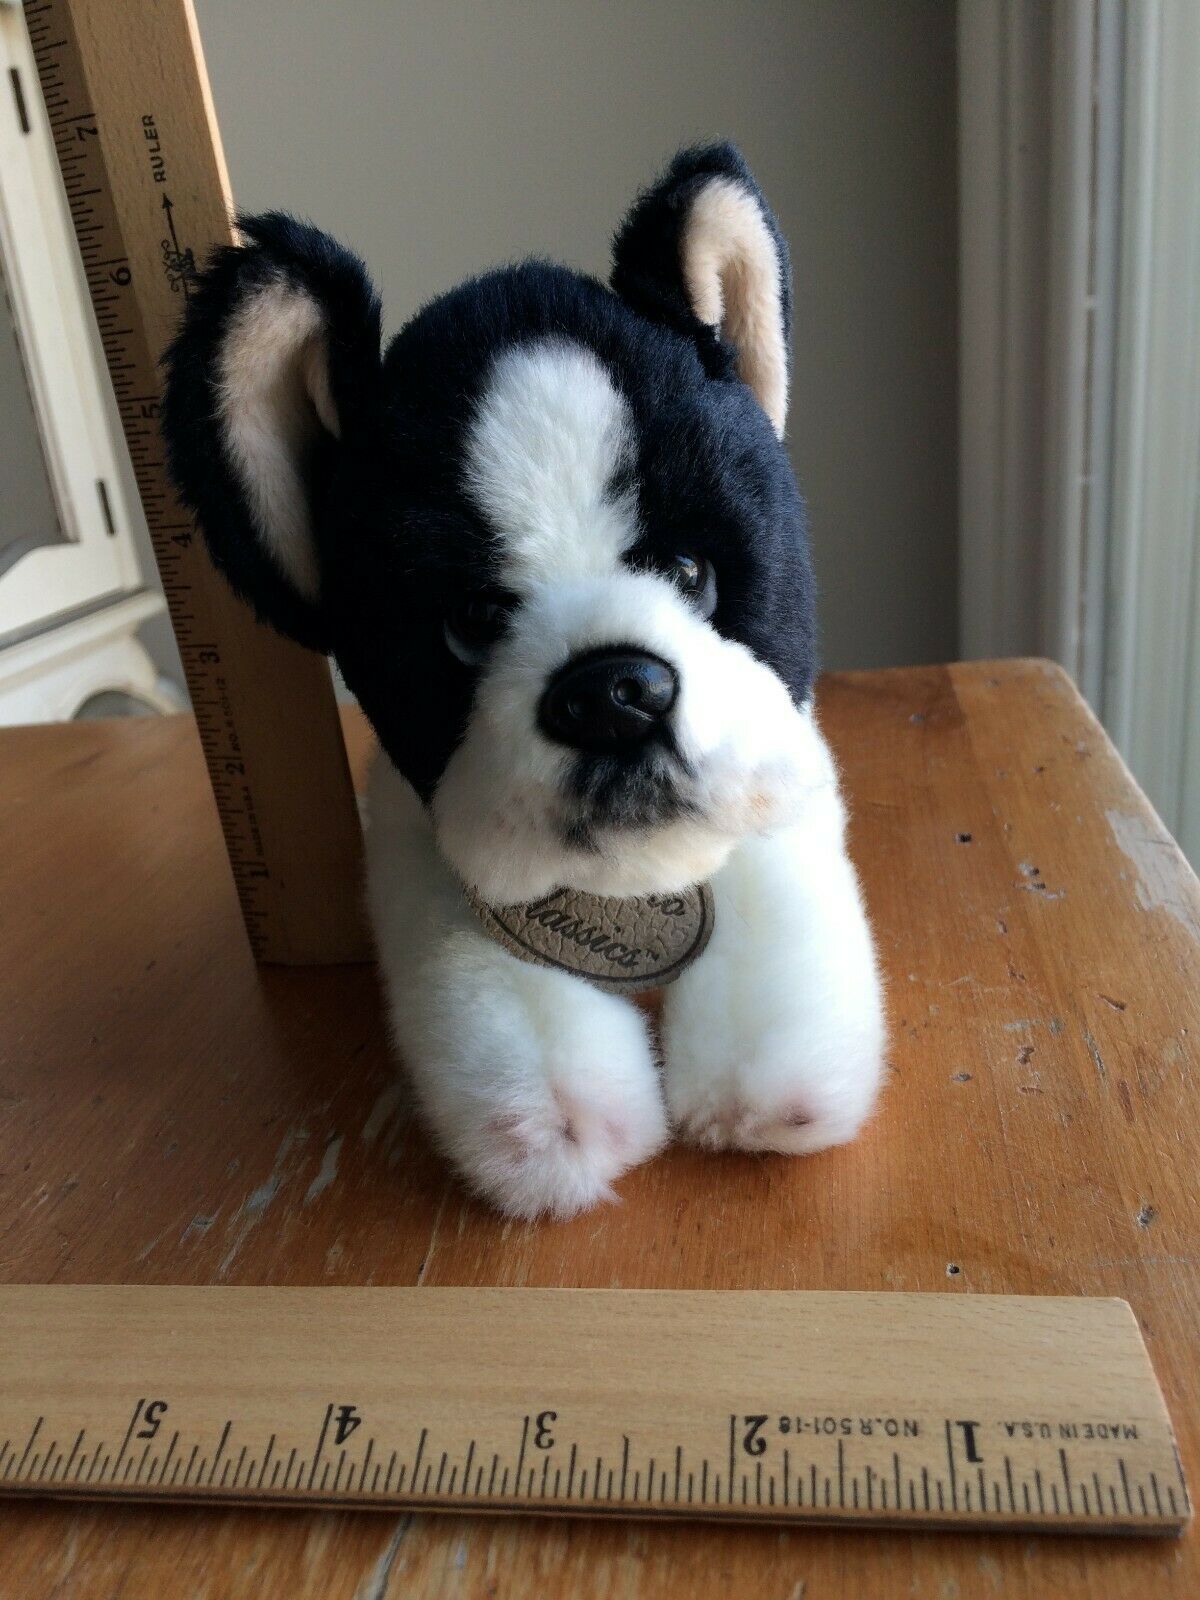 Yomiko Classics Boston Terrier Dog Plush Toy Stuffed Animal Black & White 11"